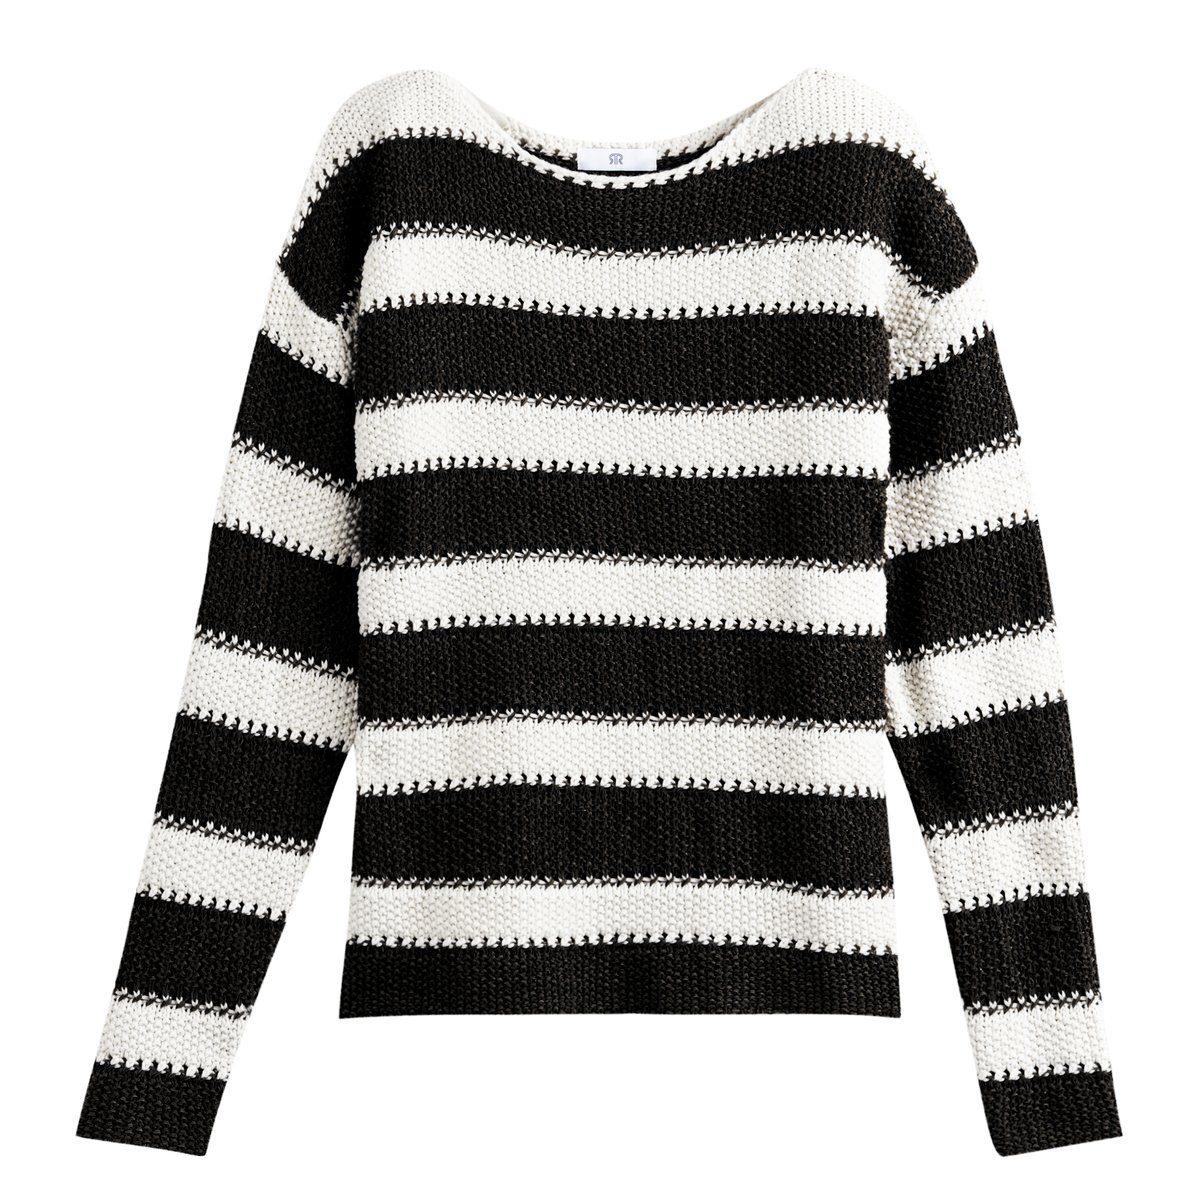 Пуловер La Redoute В полоску в морском стиле из плотного трикотажа S черный, размер S - фото 5